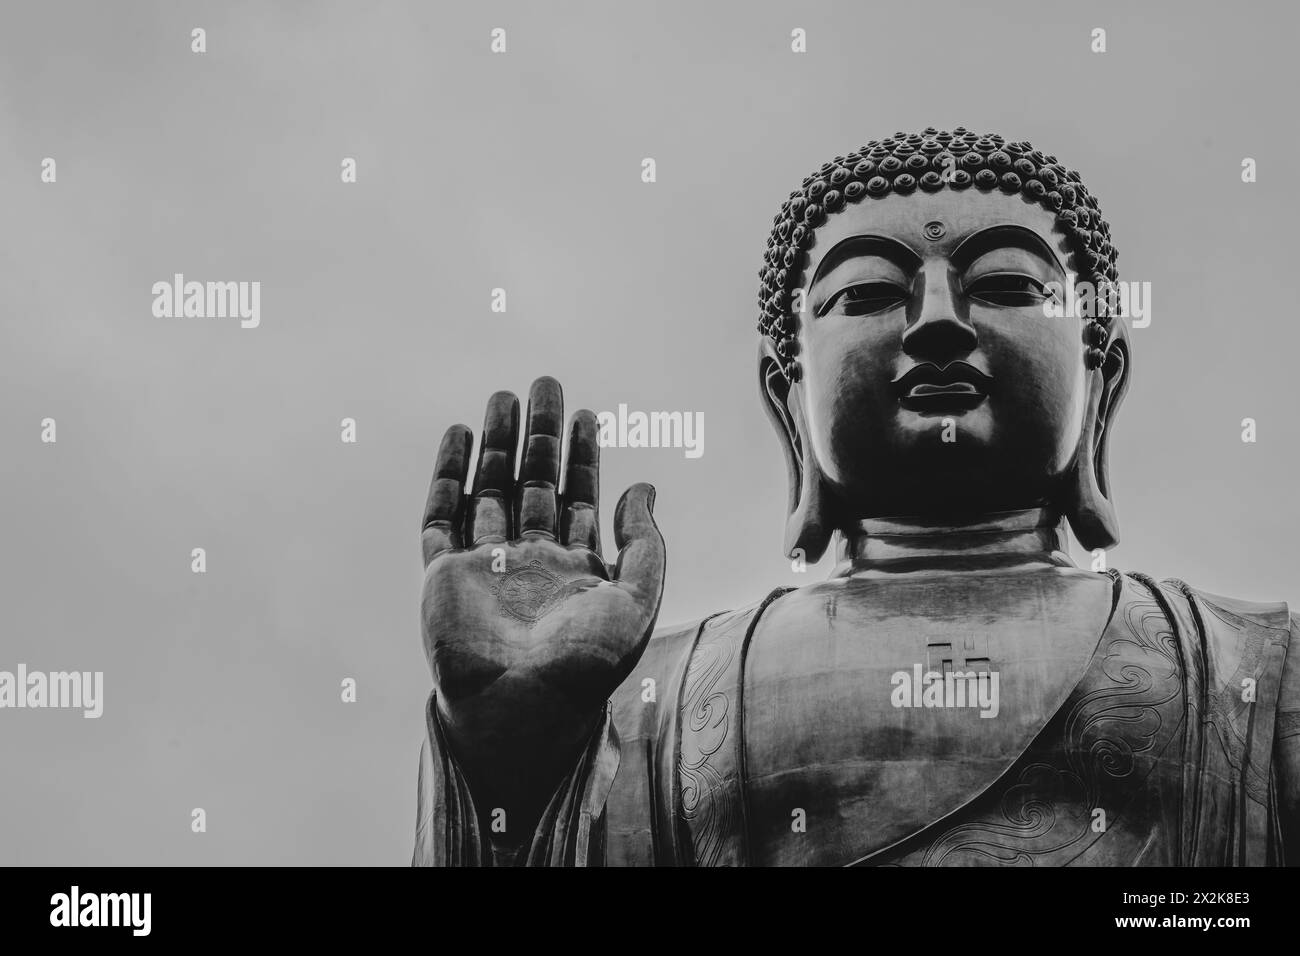 Ein Schwarzweiß-Bild mit einer großen Buddha-Statue, die einen ruhigen Ausdruck und eine erhobene Hand zeigt, vor einem klaren Himmel. Stockfoto